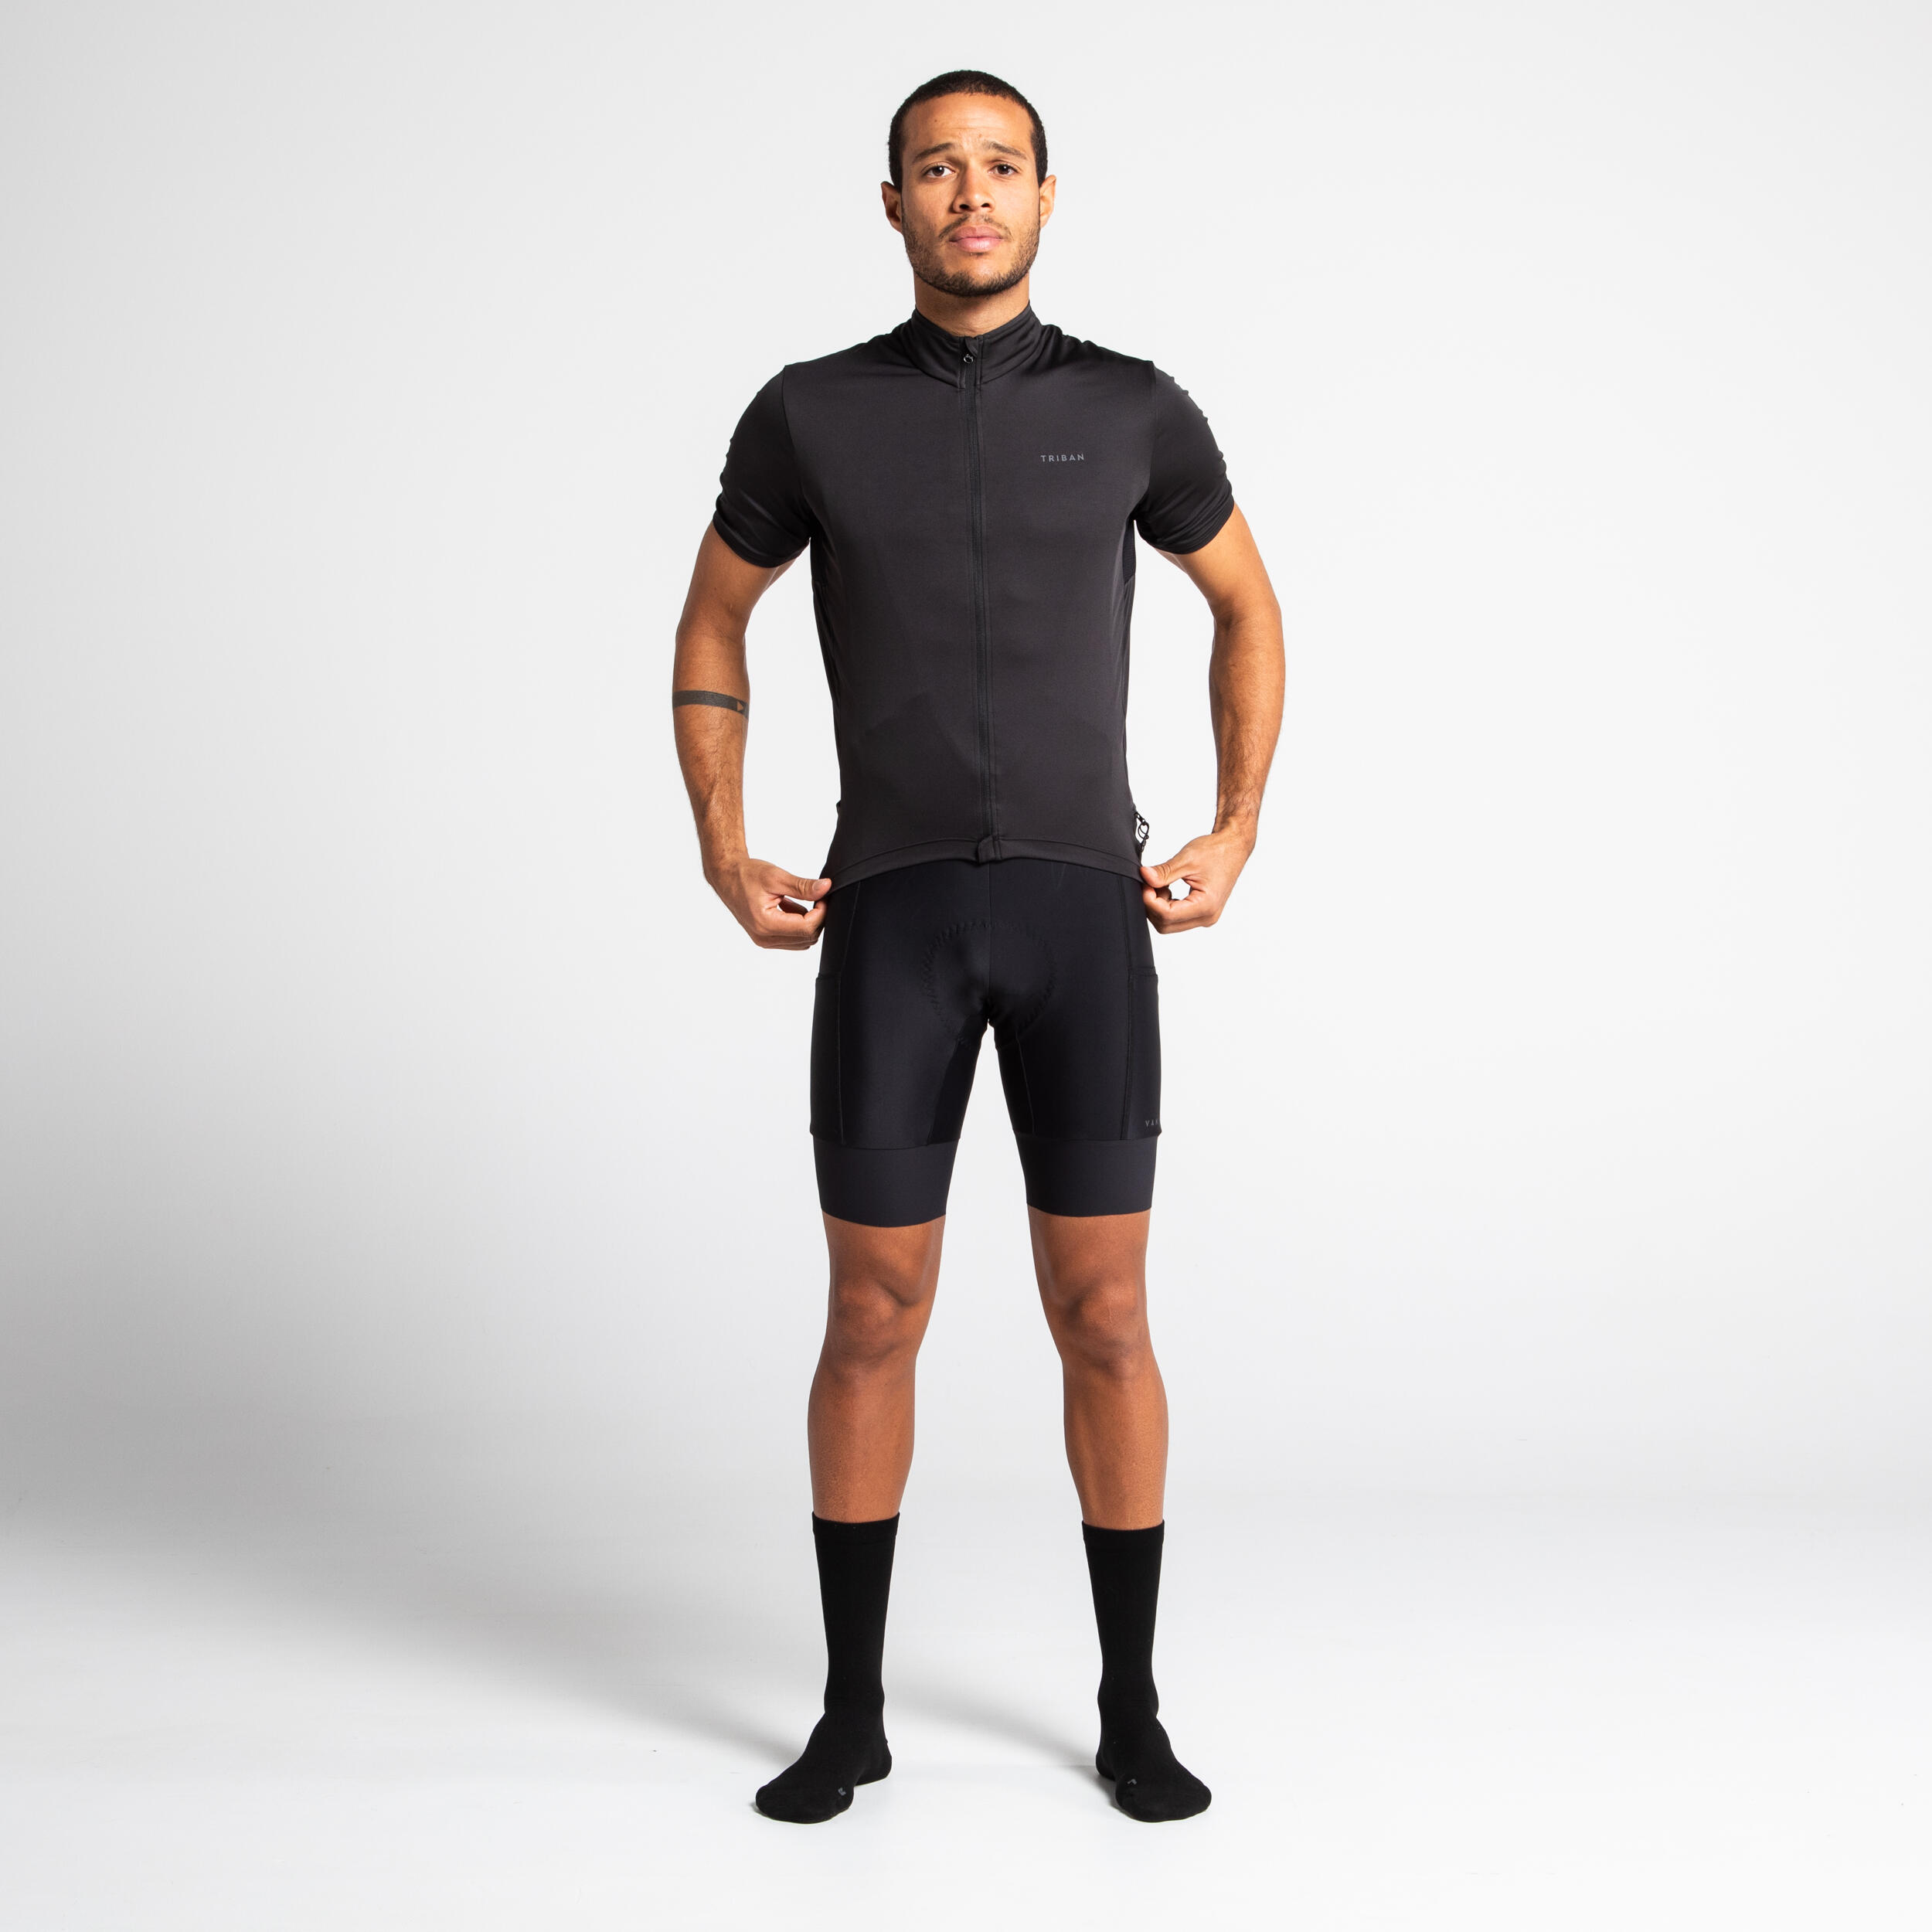 Men's Road Cycling Bib Shorts RC500 - Black 8/10